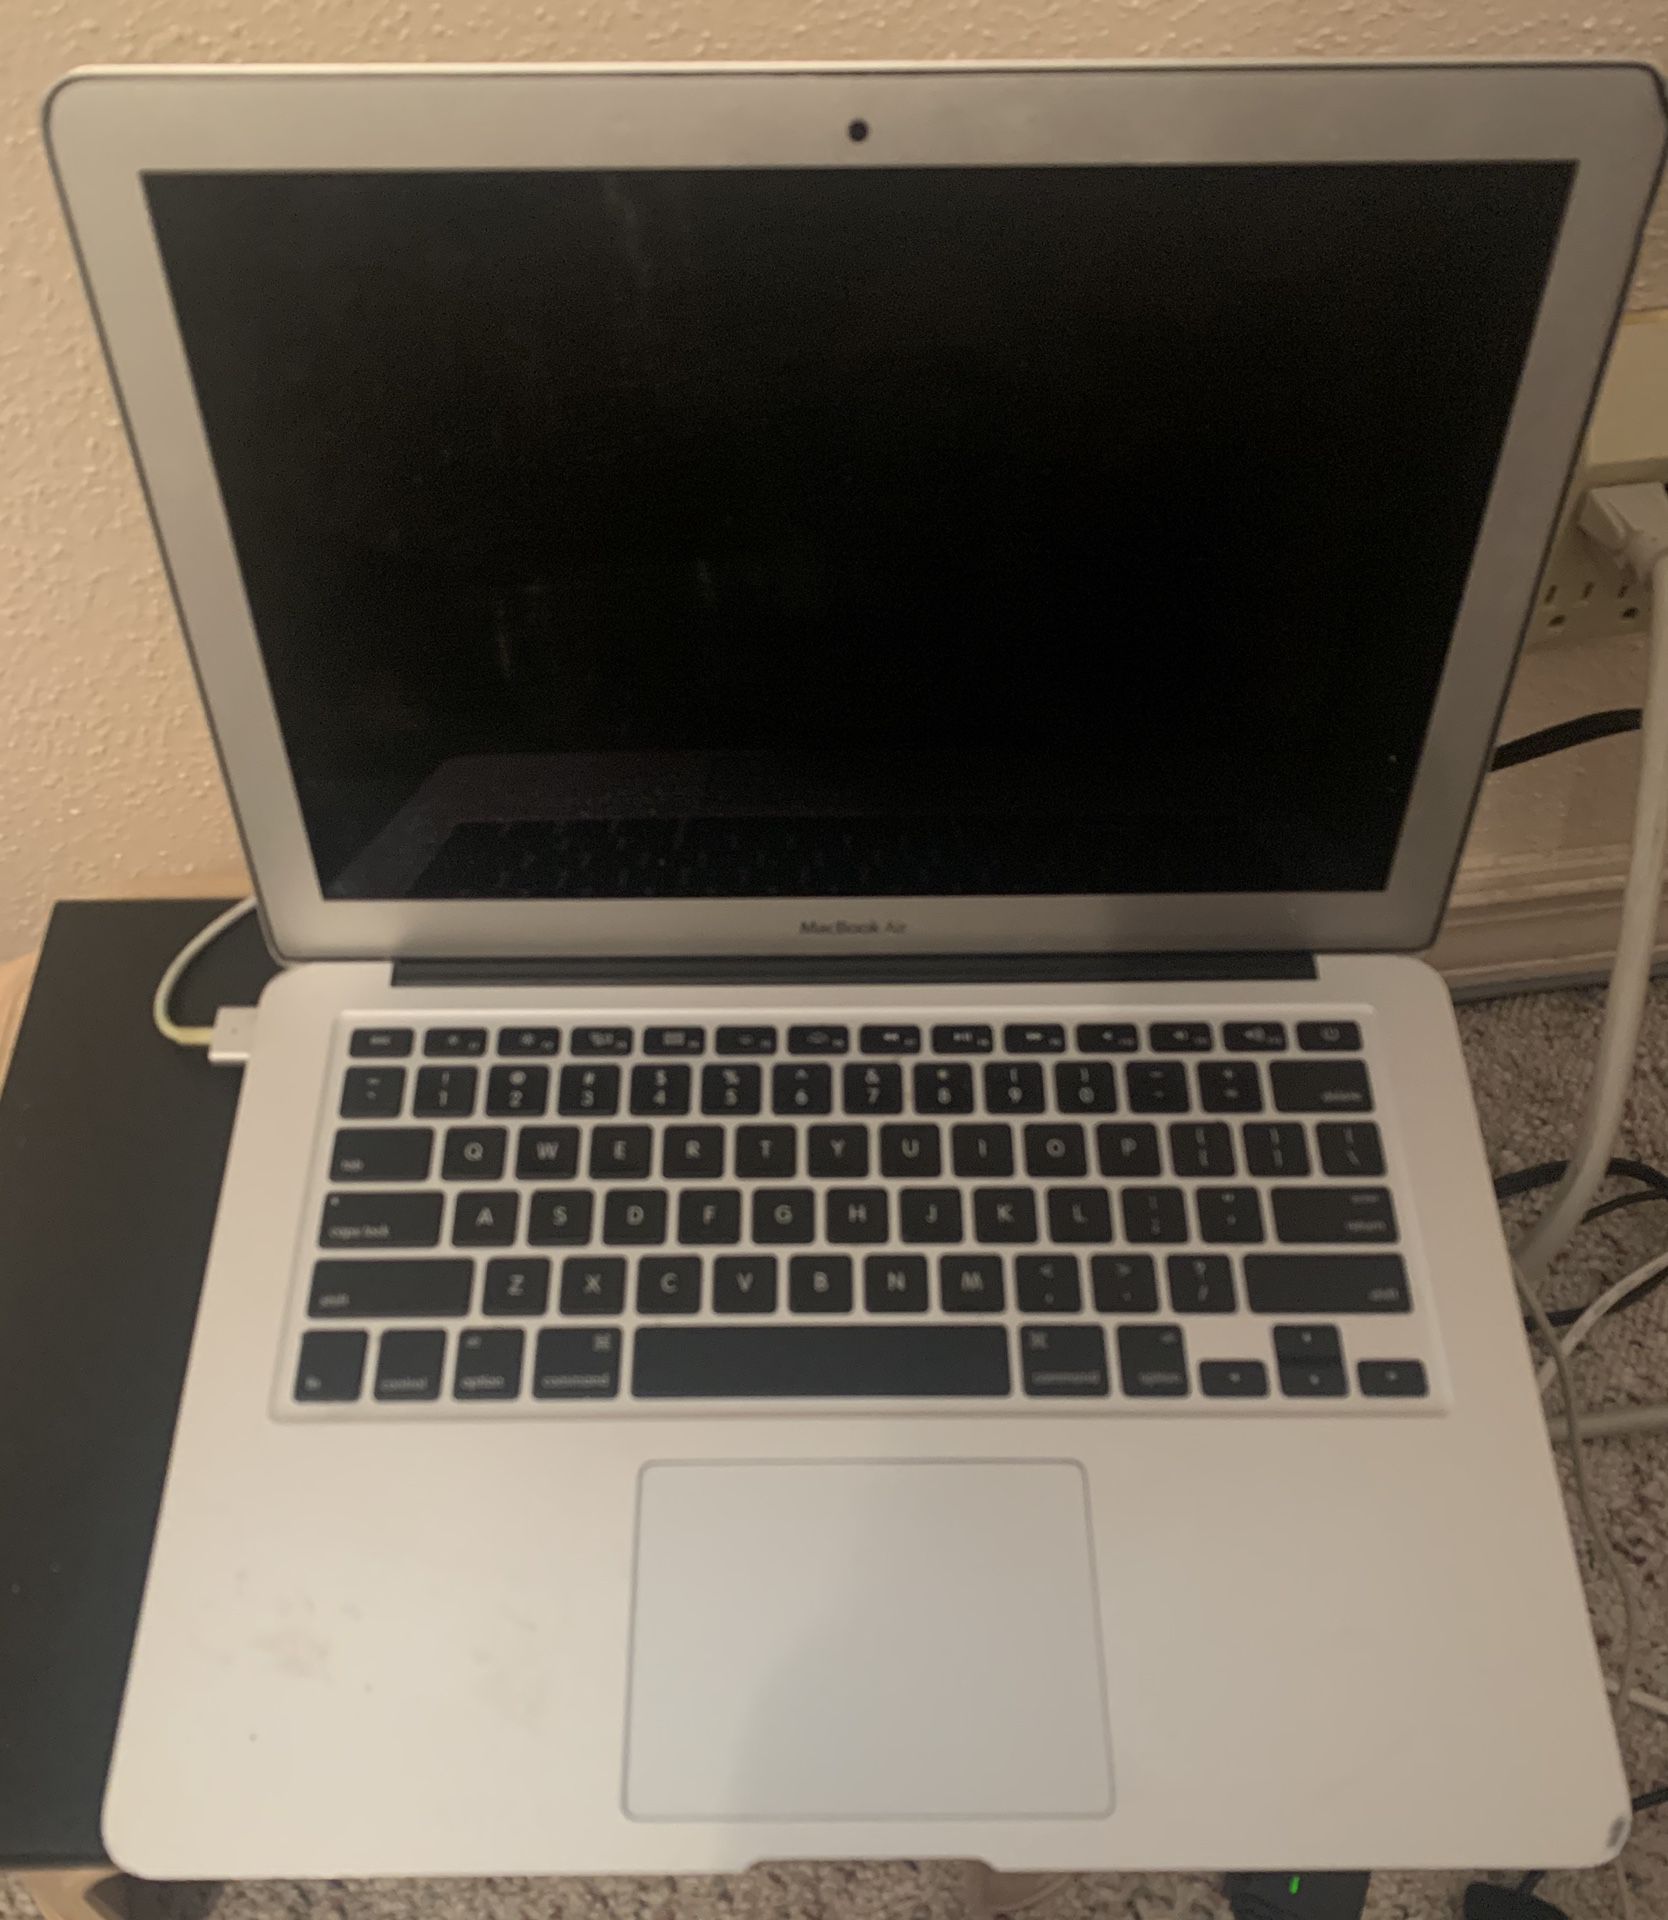 Macbook Air Laptop - Model 1466- 13” screen